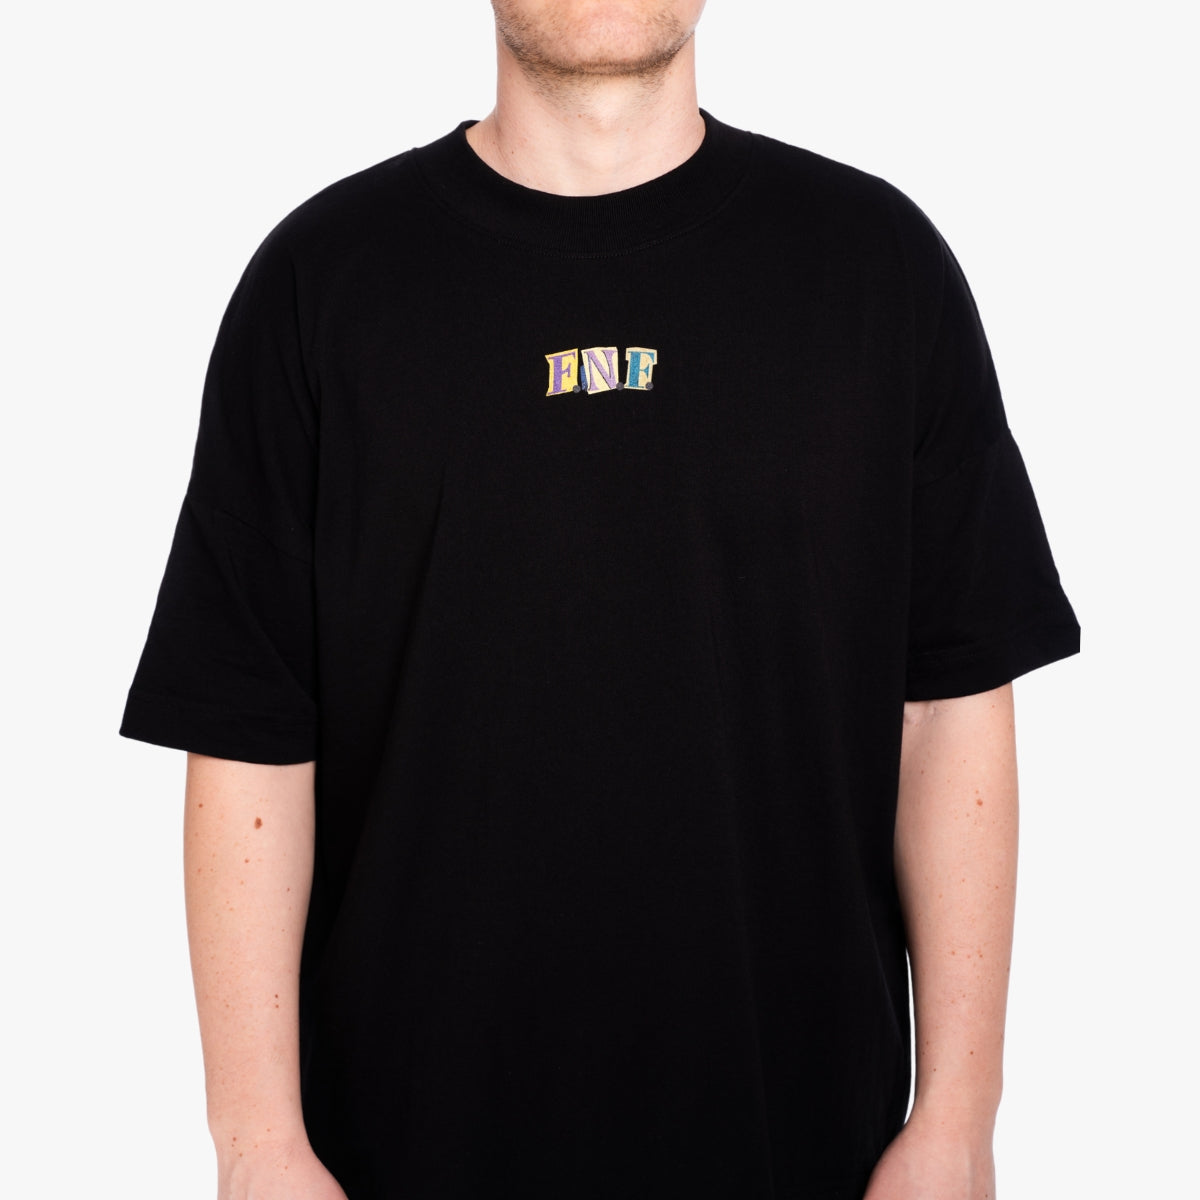 'FRIENDS NOT FOOD Letter' Organic Oversize Shirt in der Farbe Black als Front Nahaufnahme getragen von einem männlichen Model